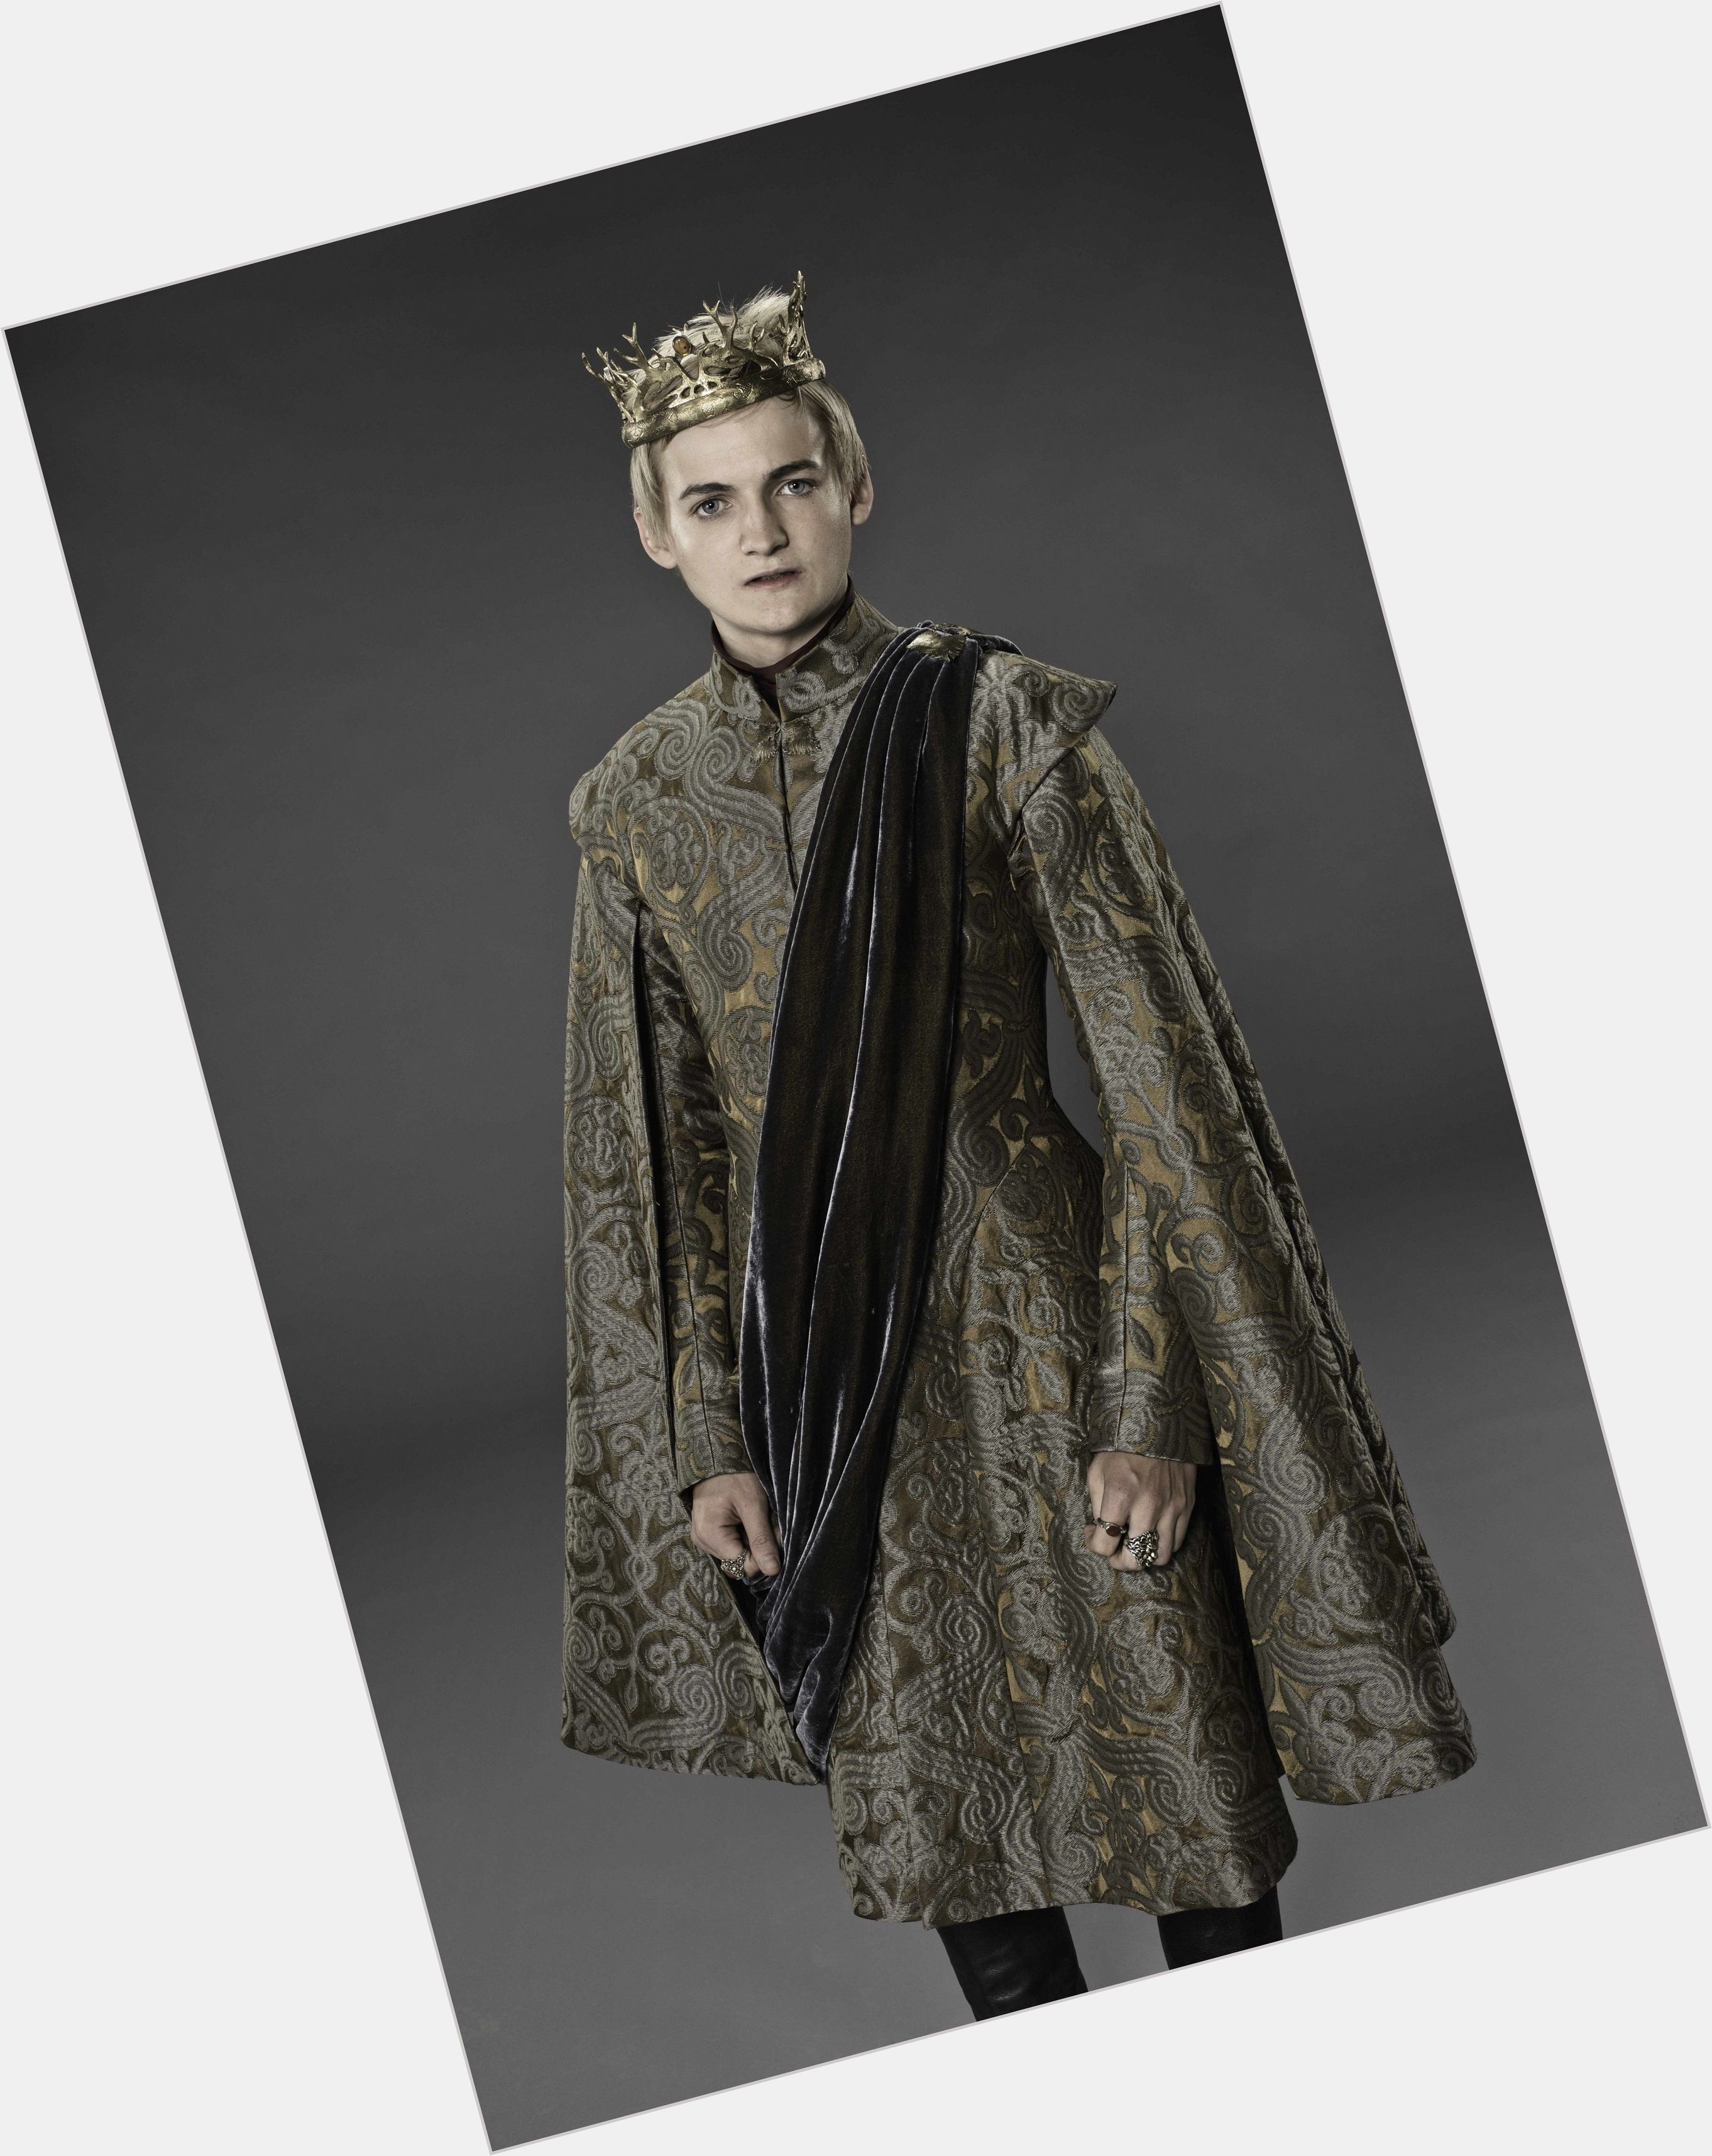 Joffrey Baratheon Slim body,  blonde hair & hairstyles